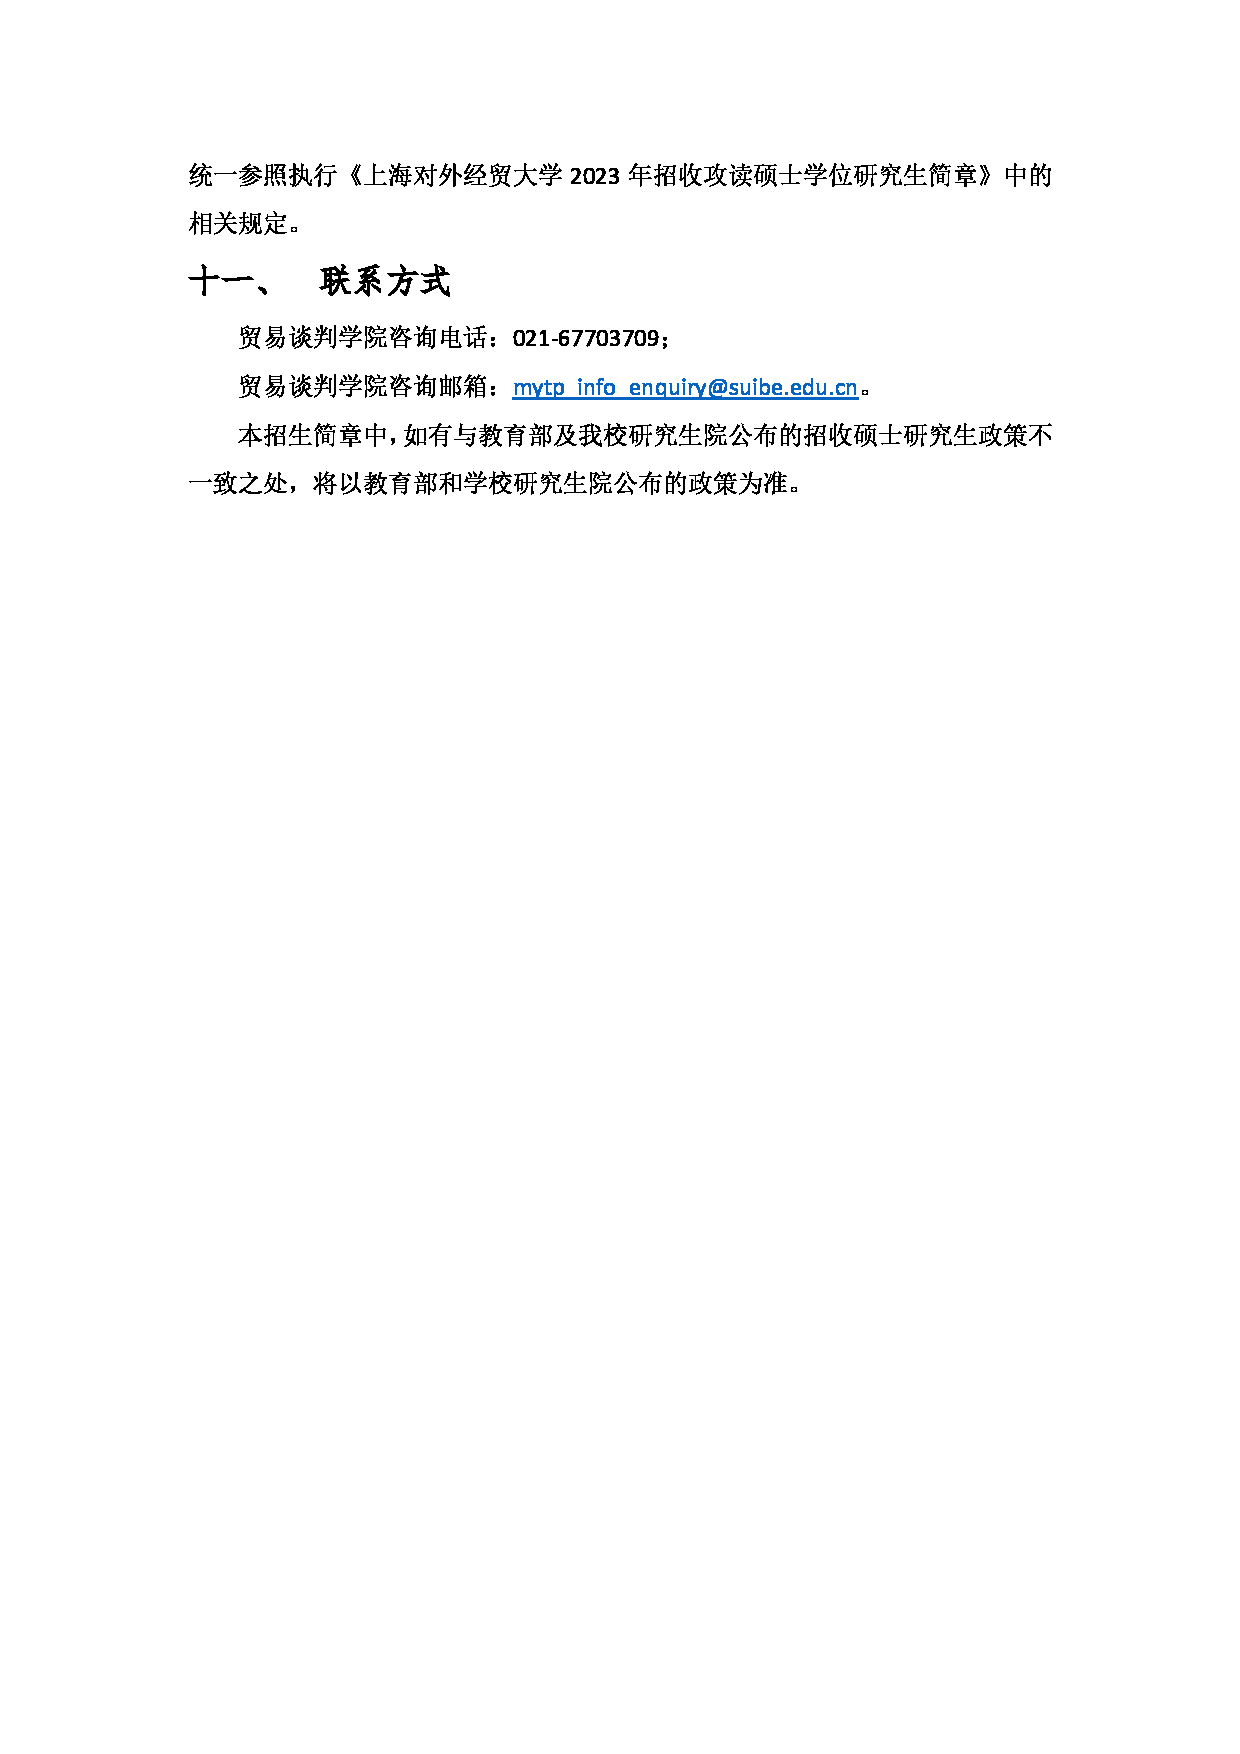 2023招生简章：上海对外经贸大学2023年法与经济学学术学位硕士研究生招生简章第4页